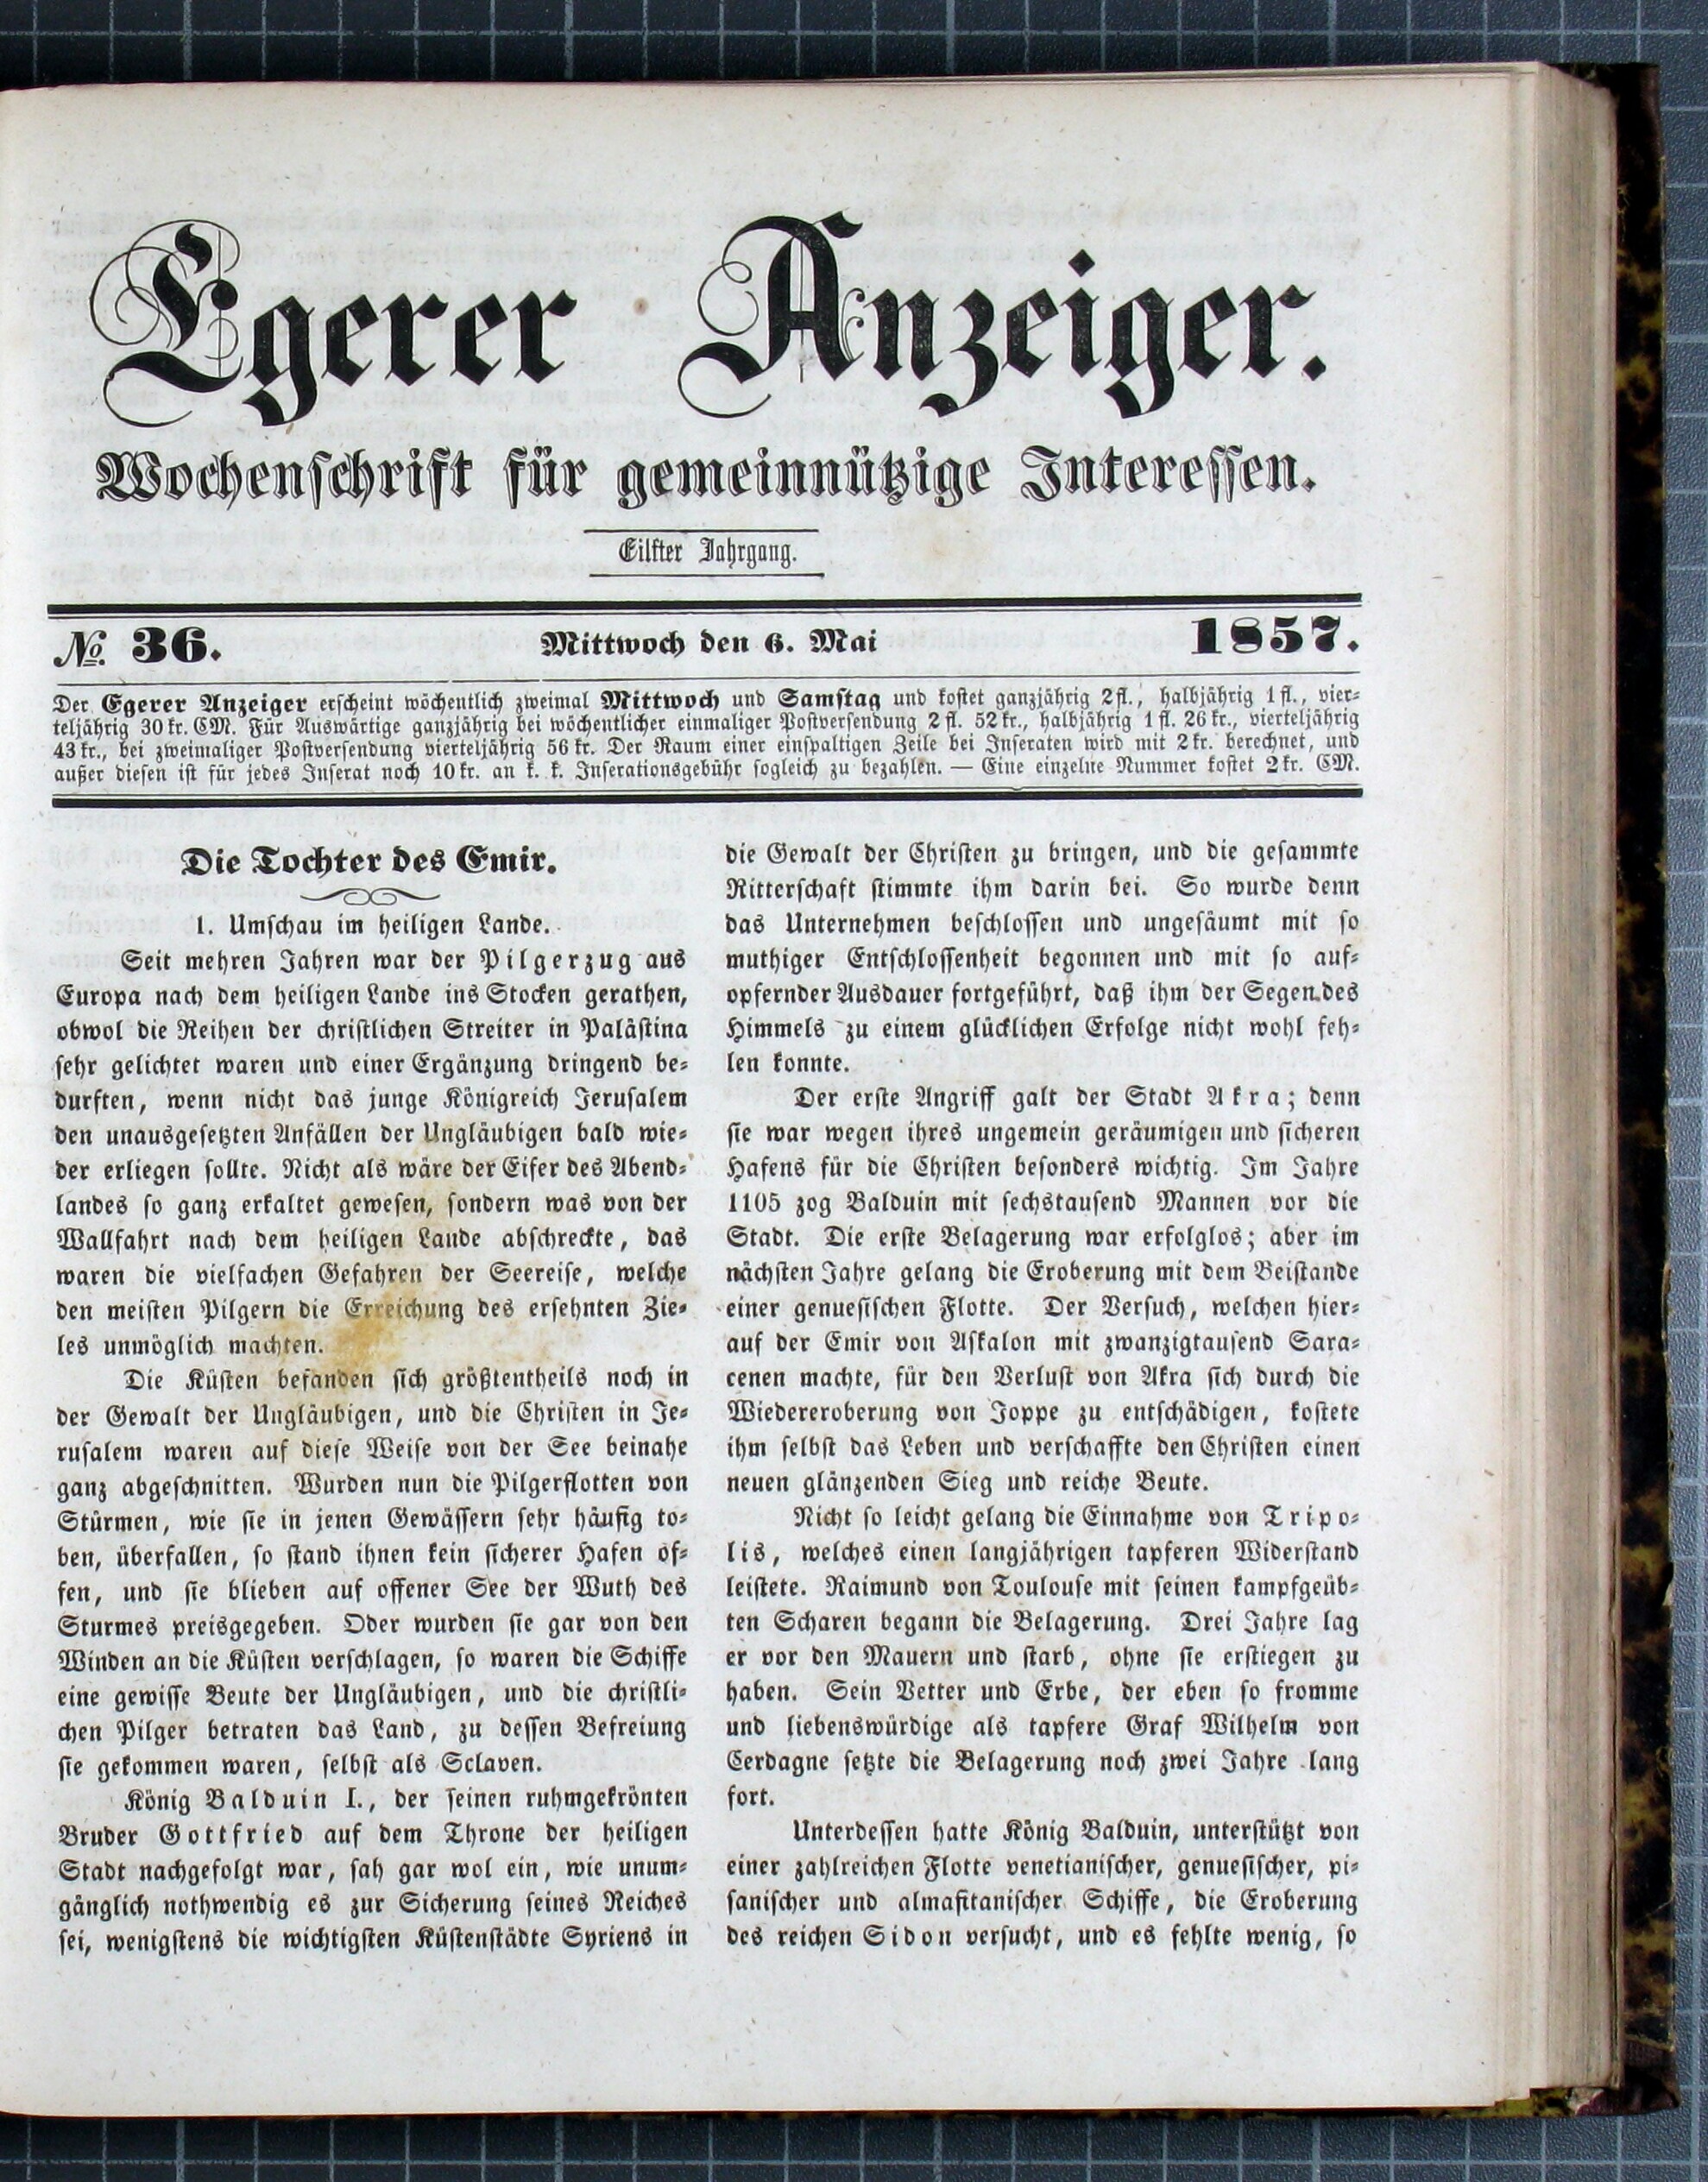 1. egerer-anzeiger-1857-05-06-n36_0735